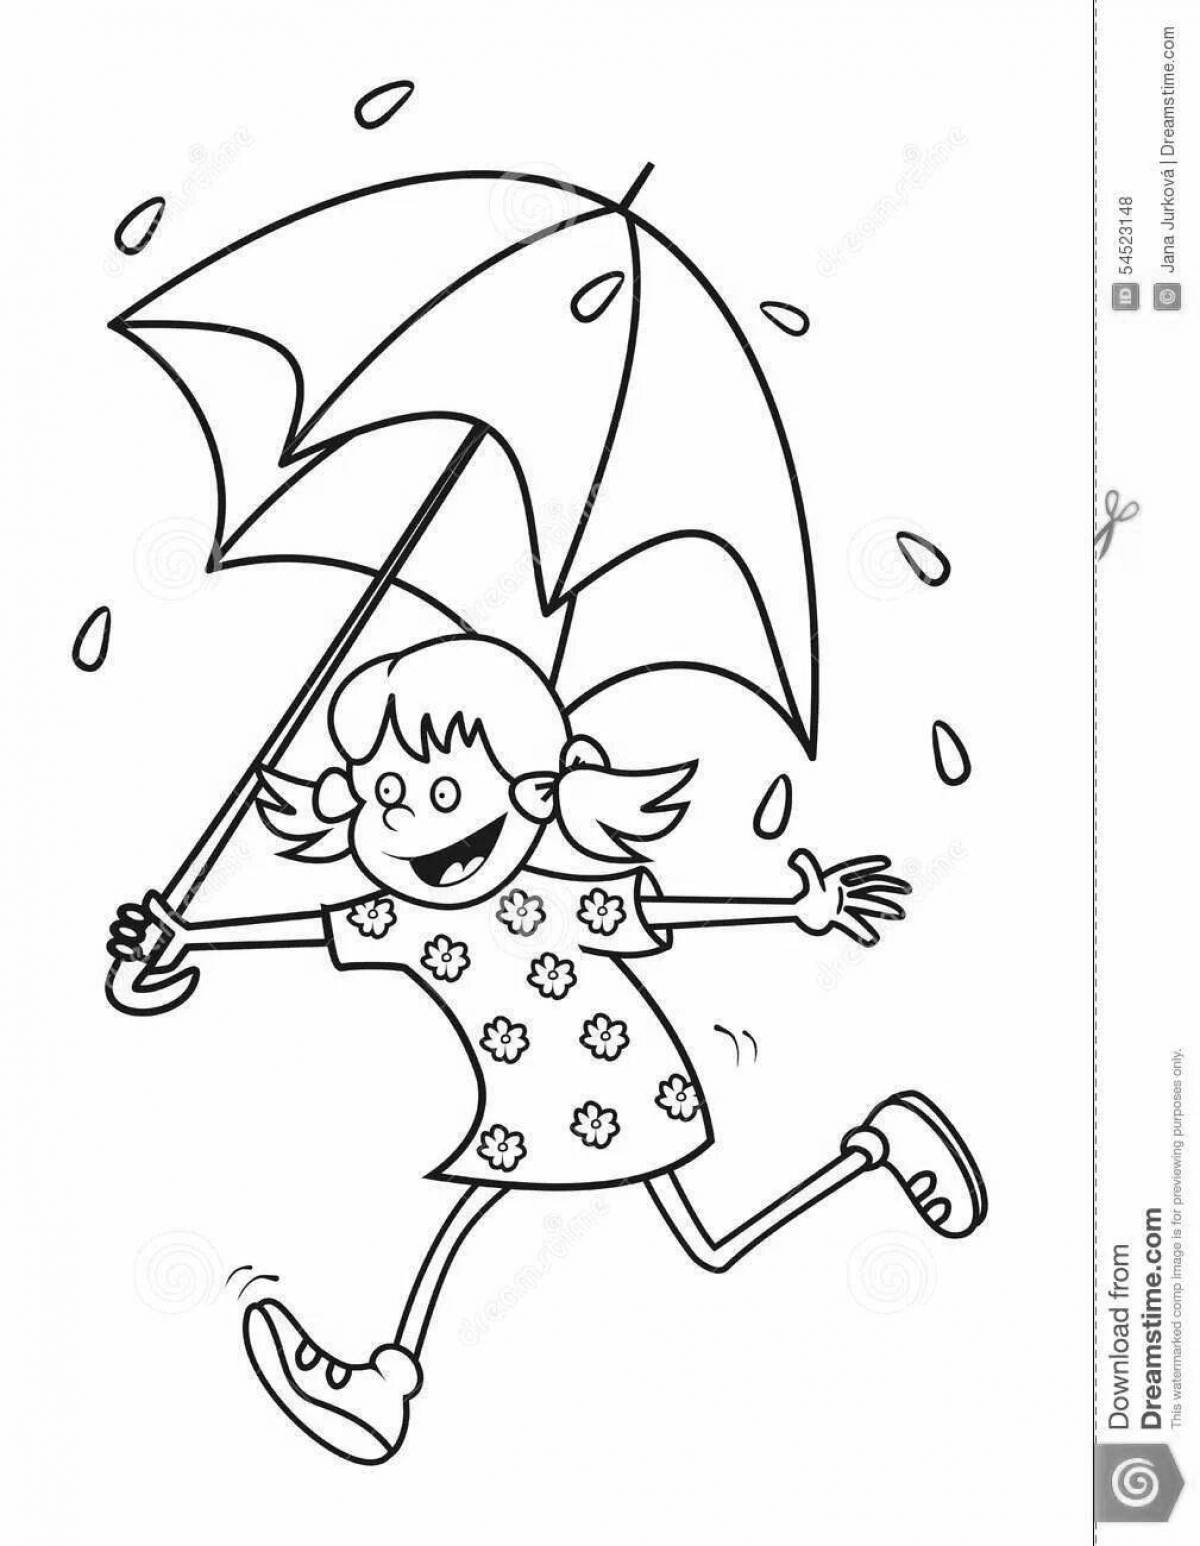 Человечек с зонтиком раскраска для детей